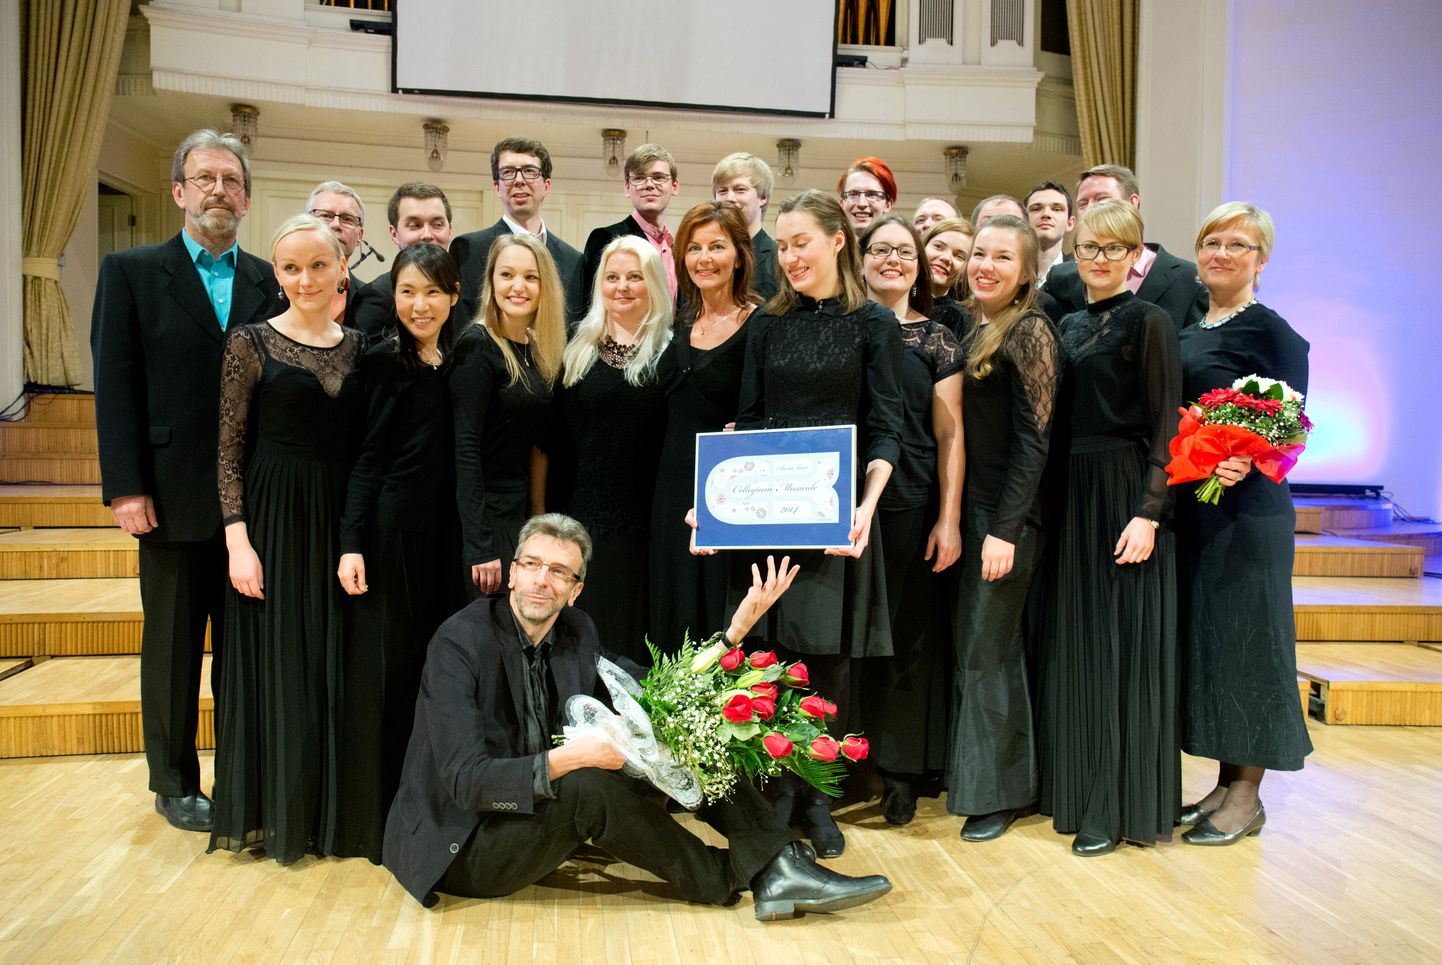 Eesti kooriühing kuulutas aasta kooriks Collegium Musicale, mille dirigent on Lihulast pärit Endrik Üksvärav.